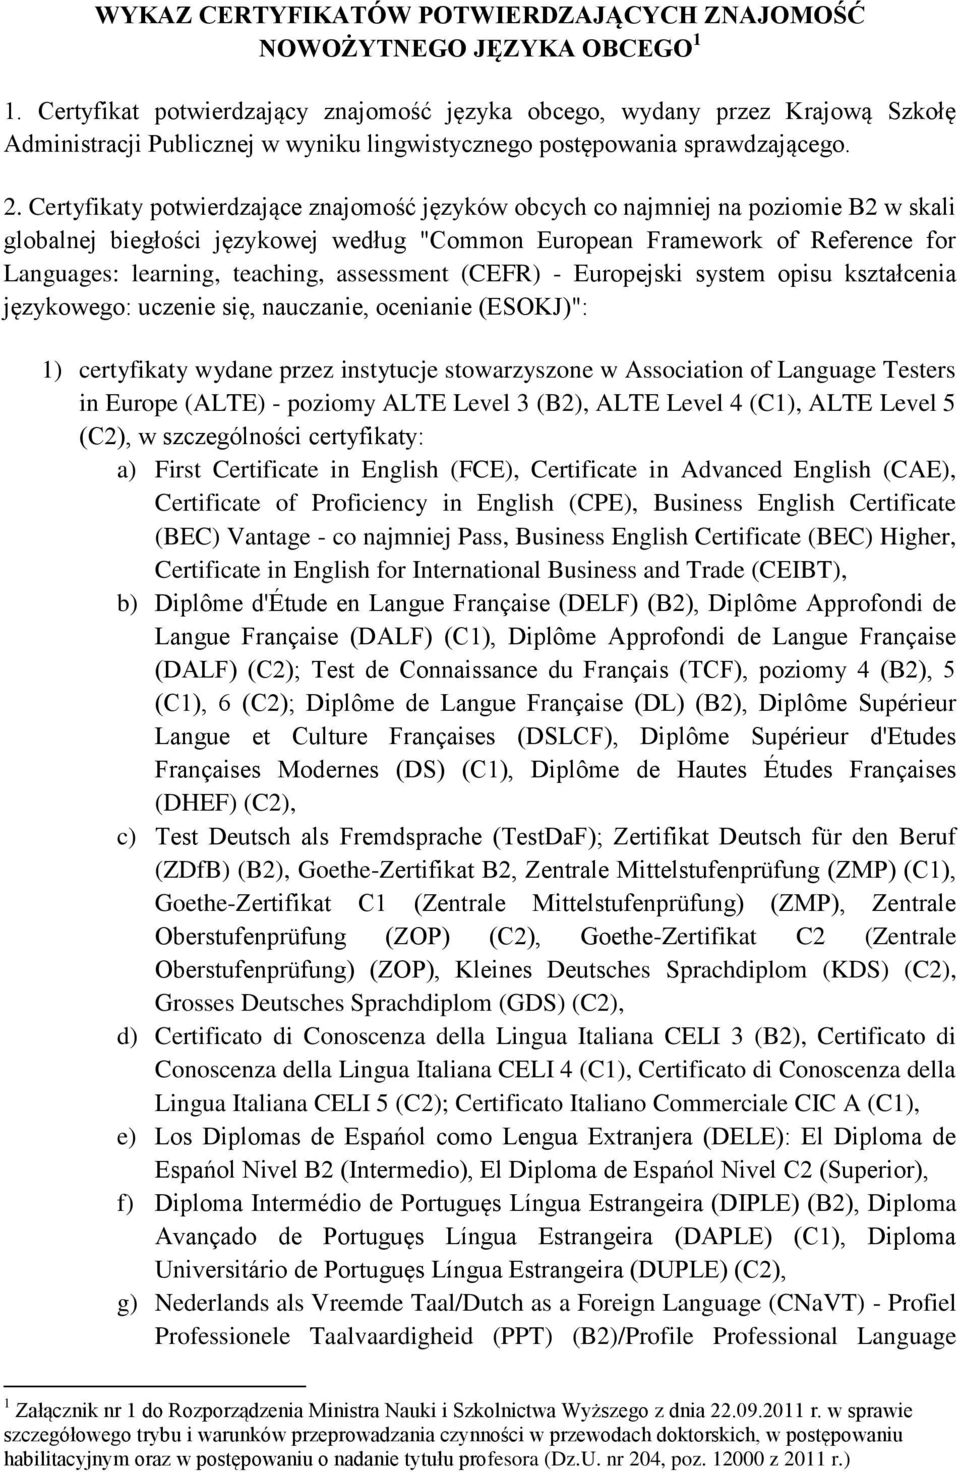 Certyfikaty potwierdzające znajomość języków obcych co najmniej na poziomie B2 w skali globalnej biegłości językowej według "Common European Framework of Reference for Languages: learning, teaching,